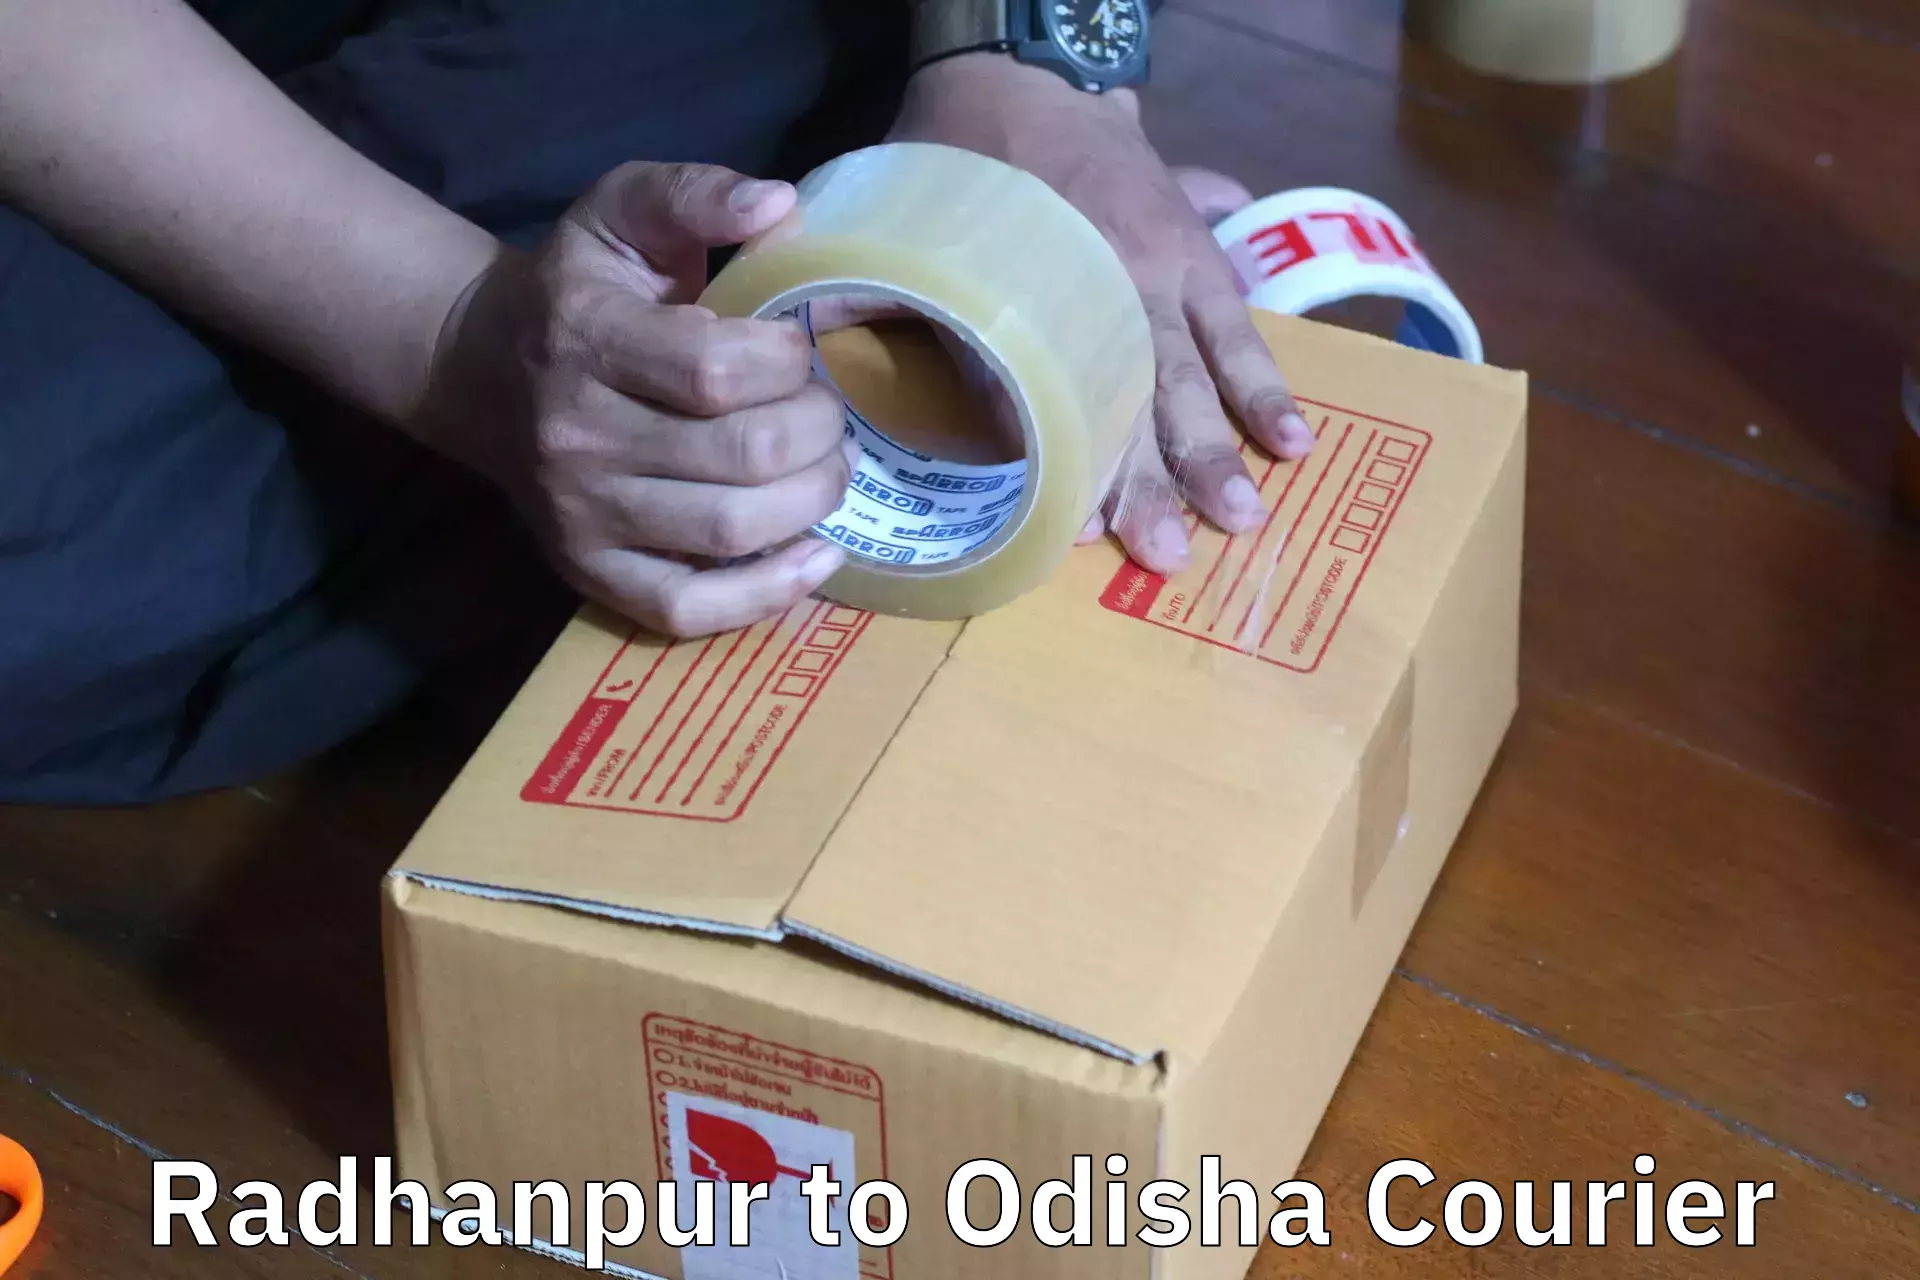 Furniture moving experts Radhanpur to Saintala